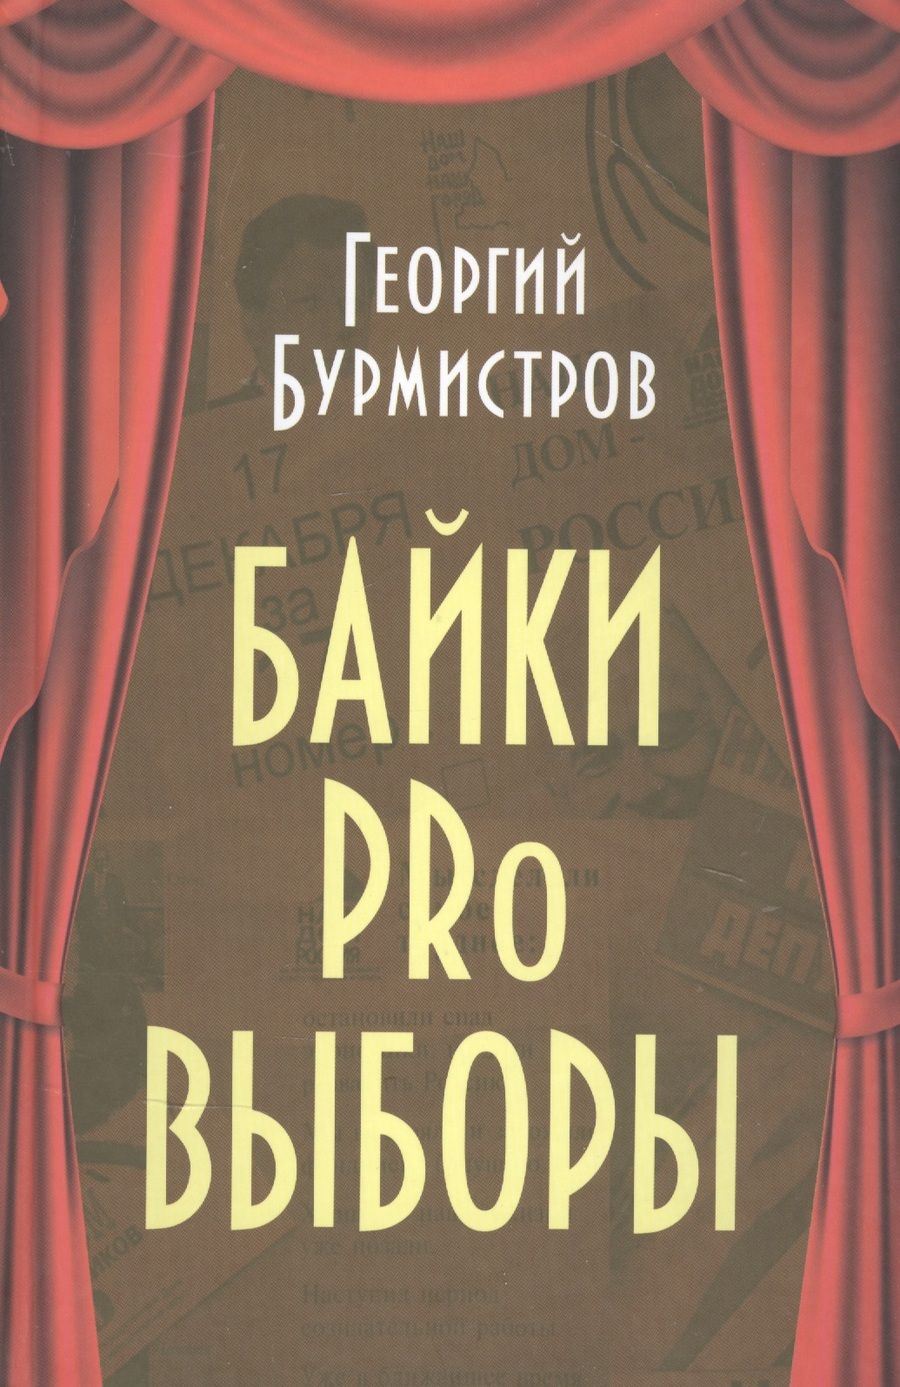 Обложка книги "Бурмистров: Байки PRo выборы"